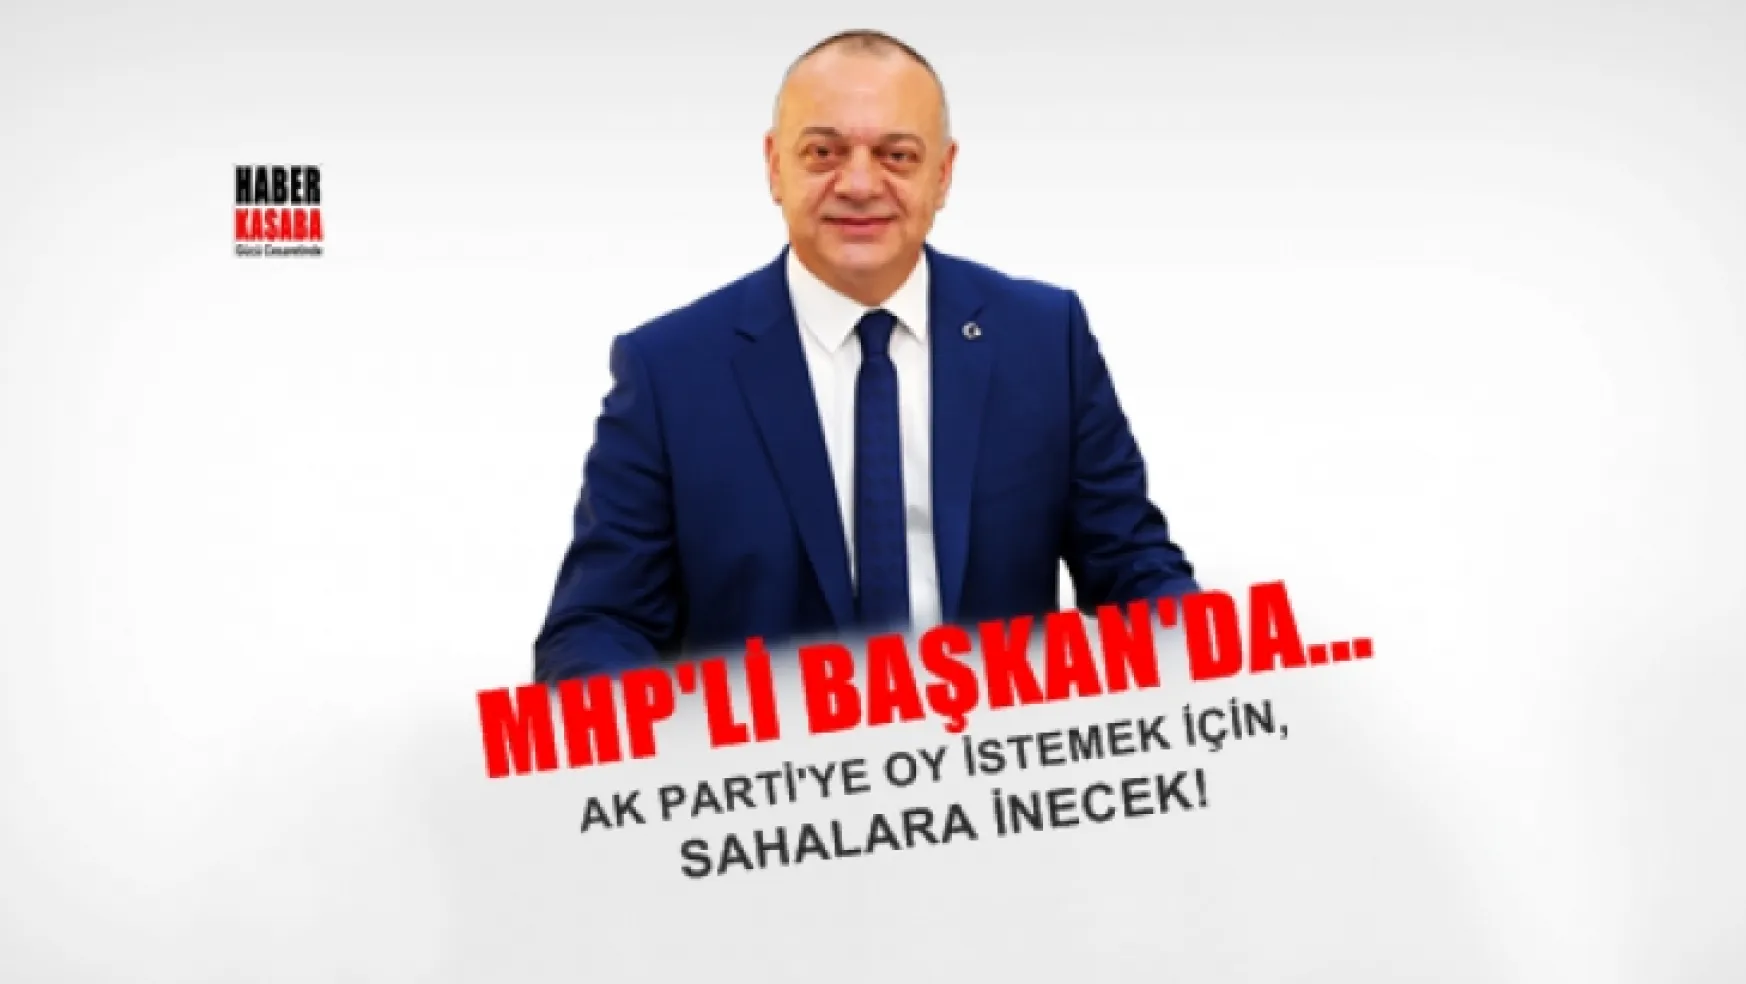 MHP'li Başkanlar AK Parti'ye Oy İsteyecek!